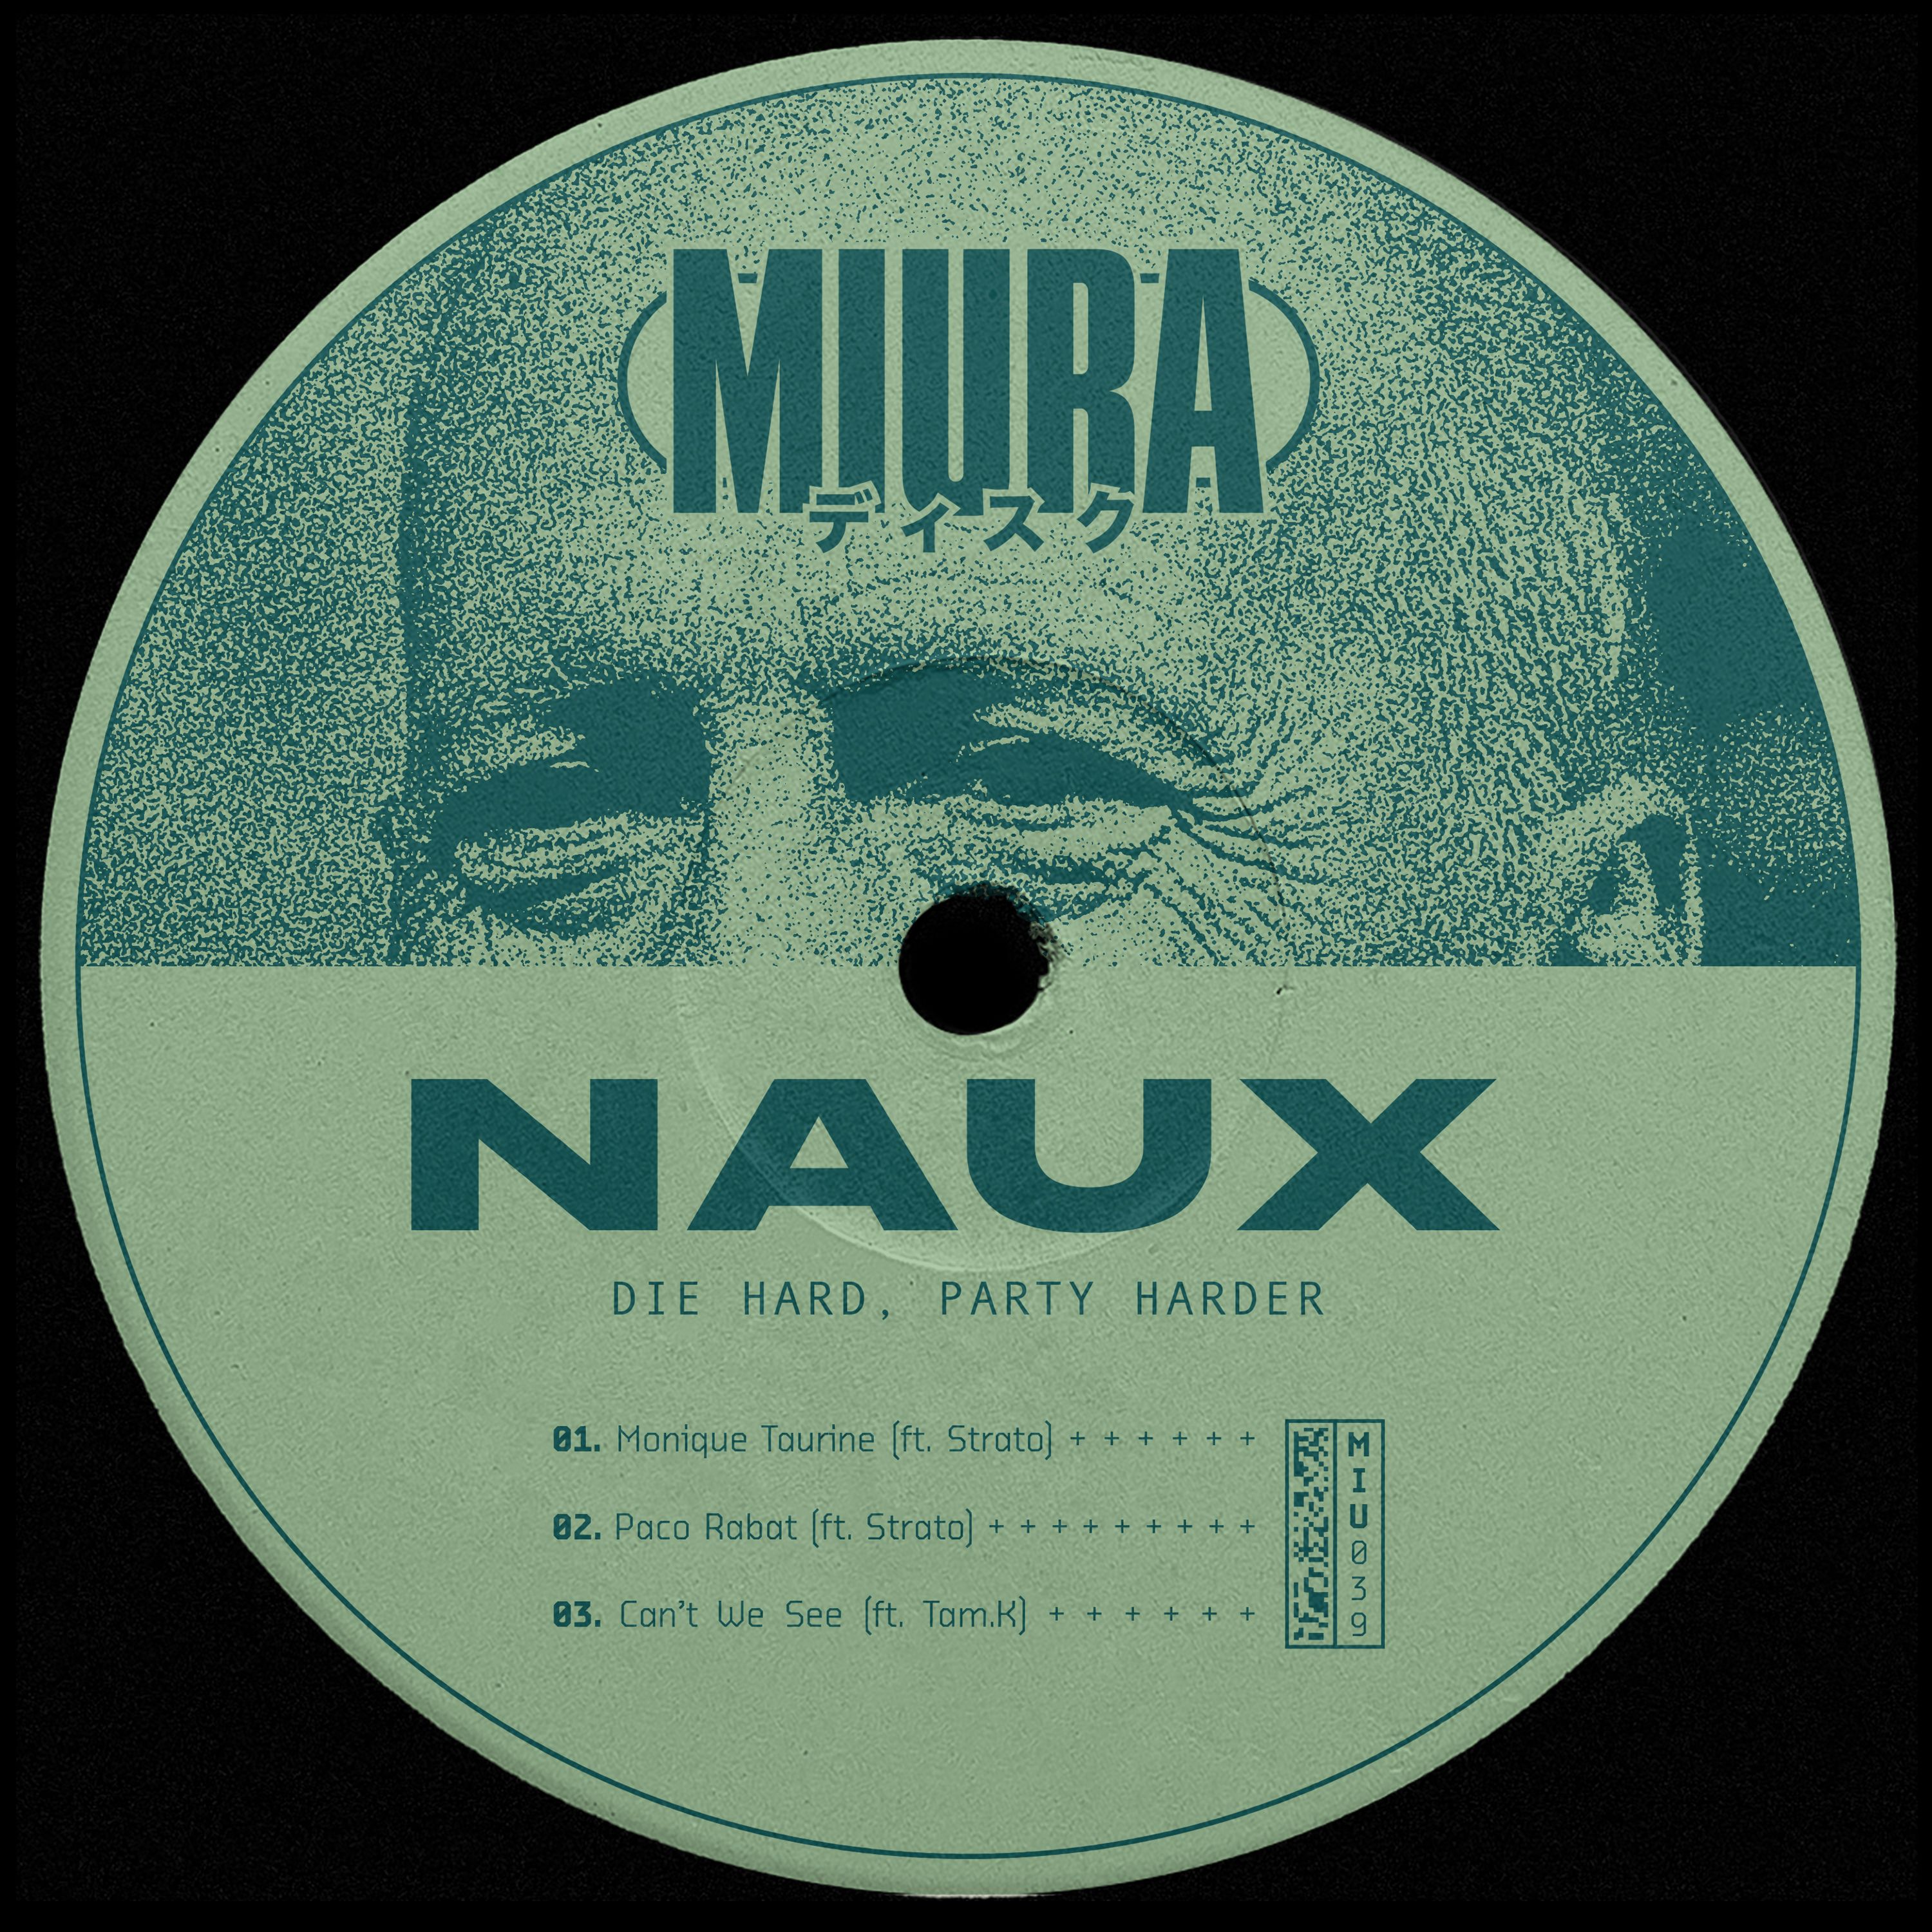 Download PREMIERE: Naux & Strato - Monique Taurine [Miura Records]